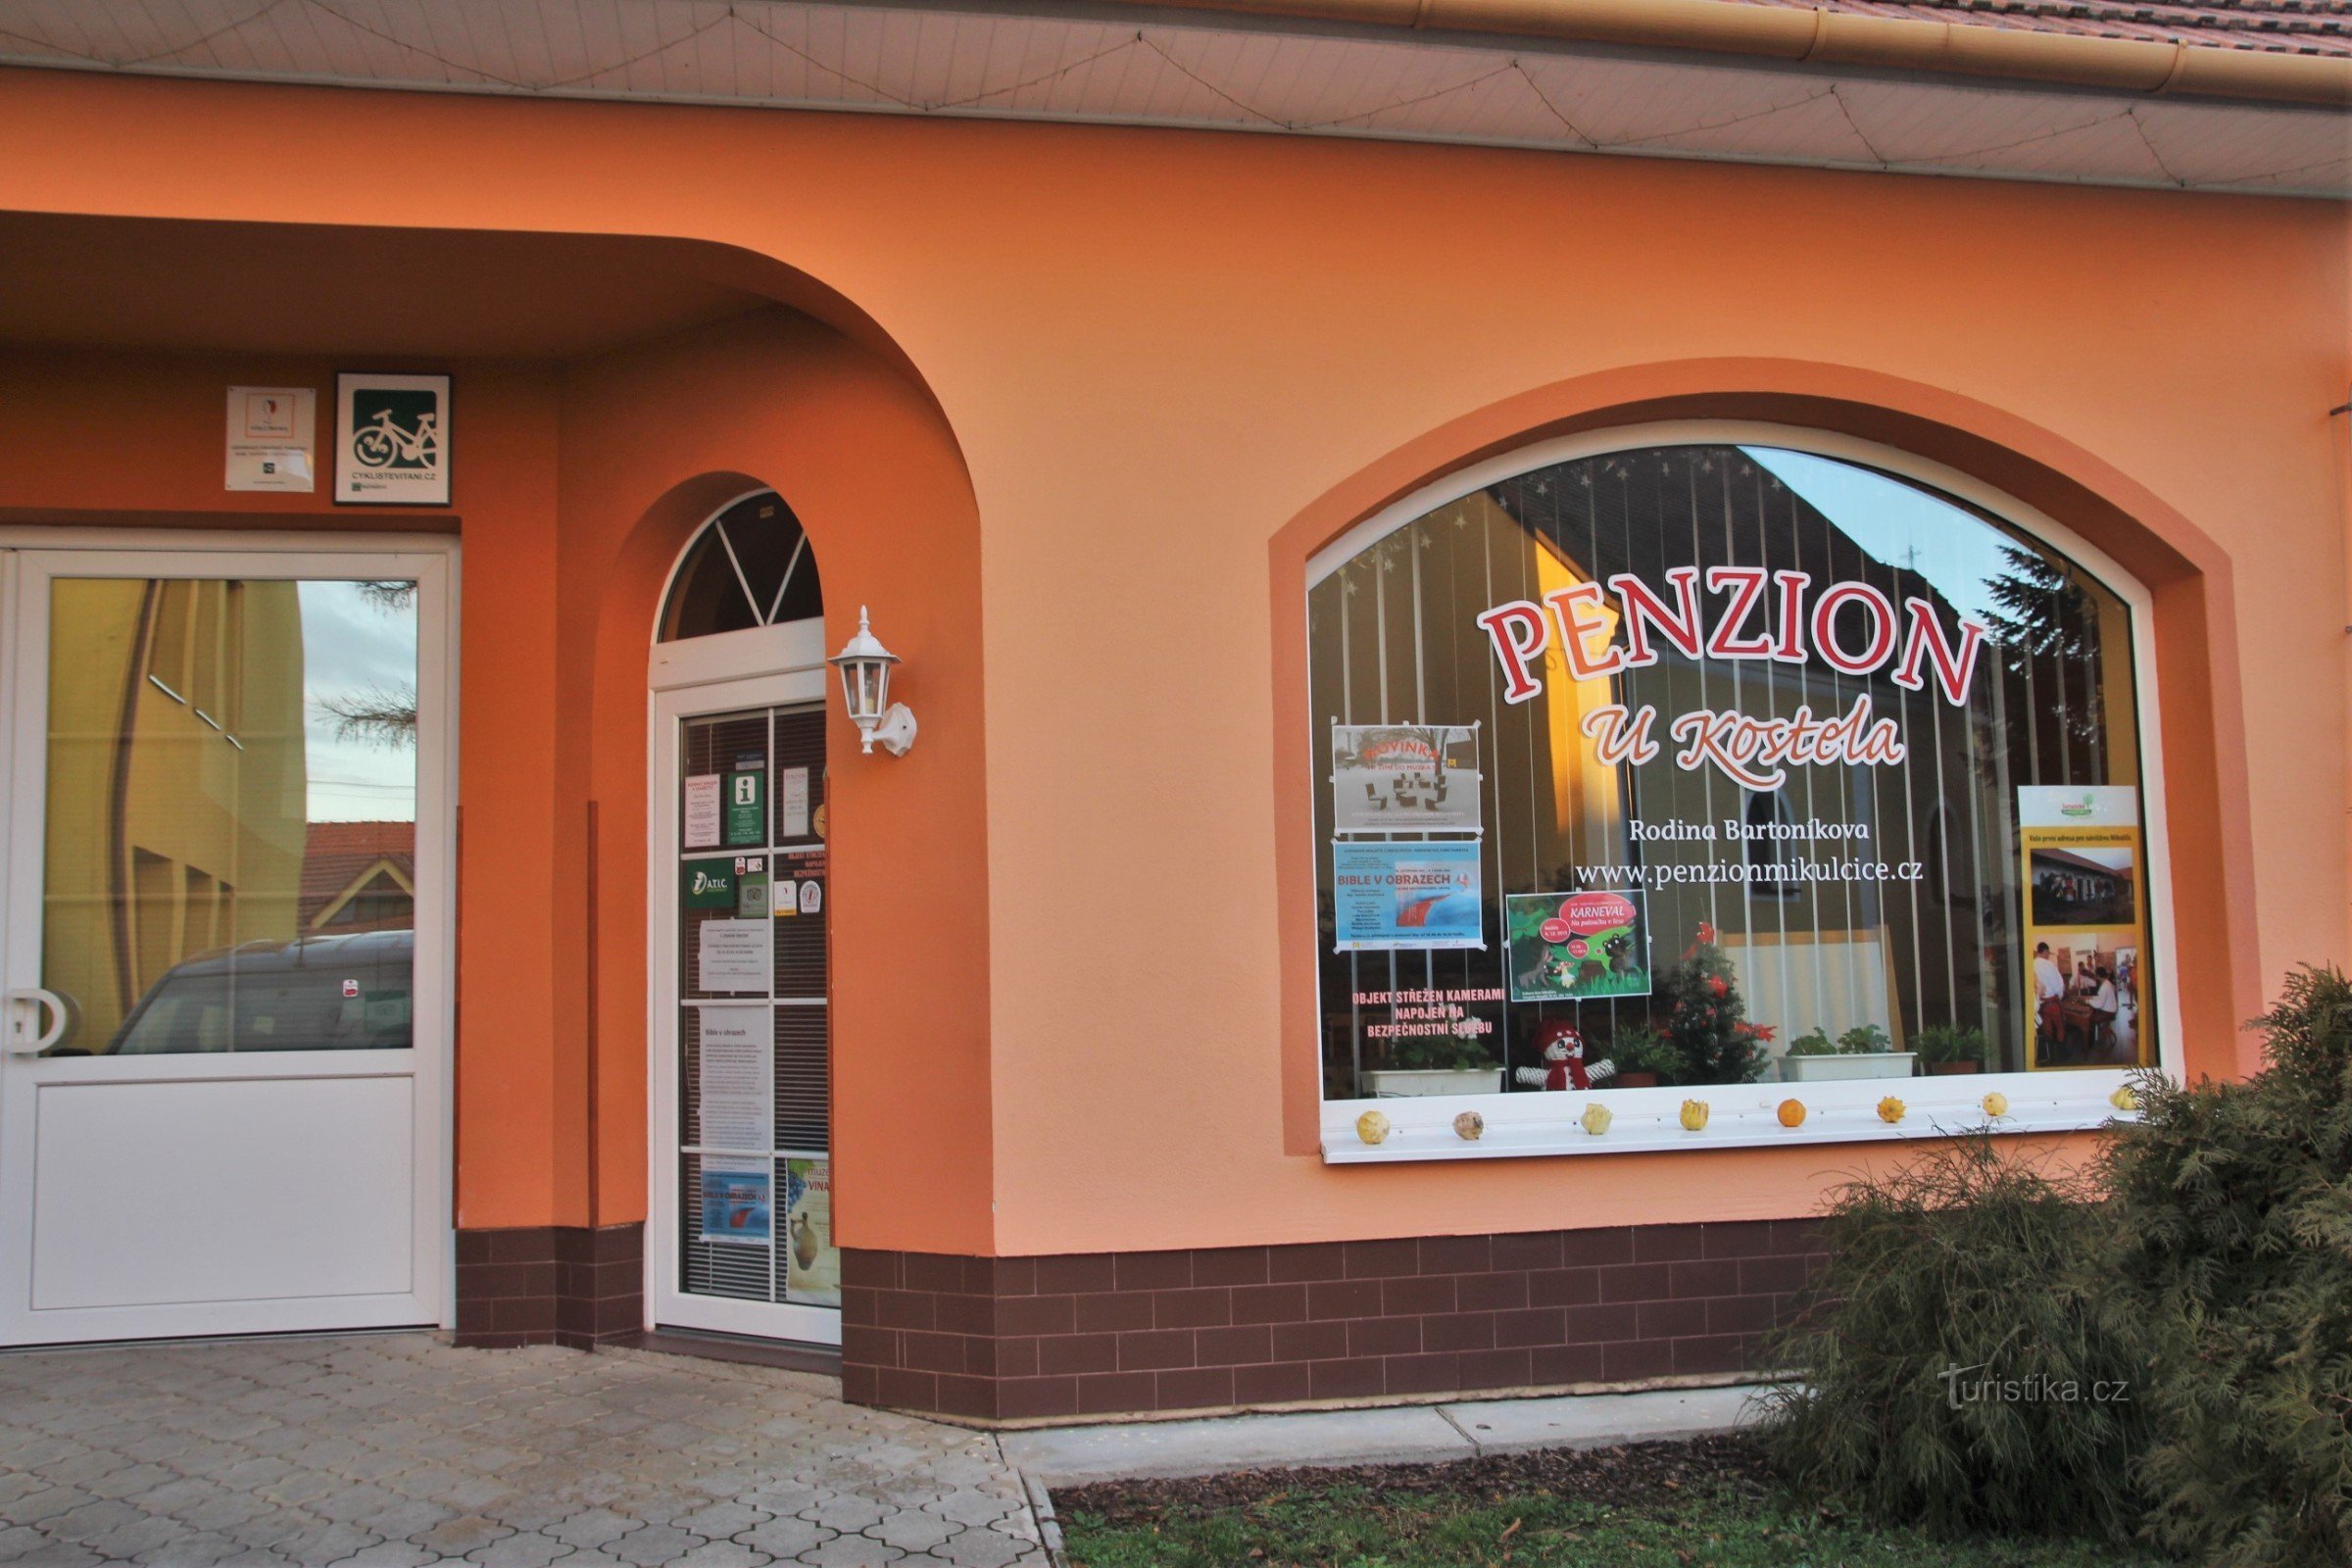 Mikulčice - Turisztikai Információs Központ